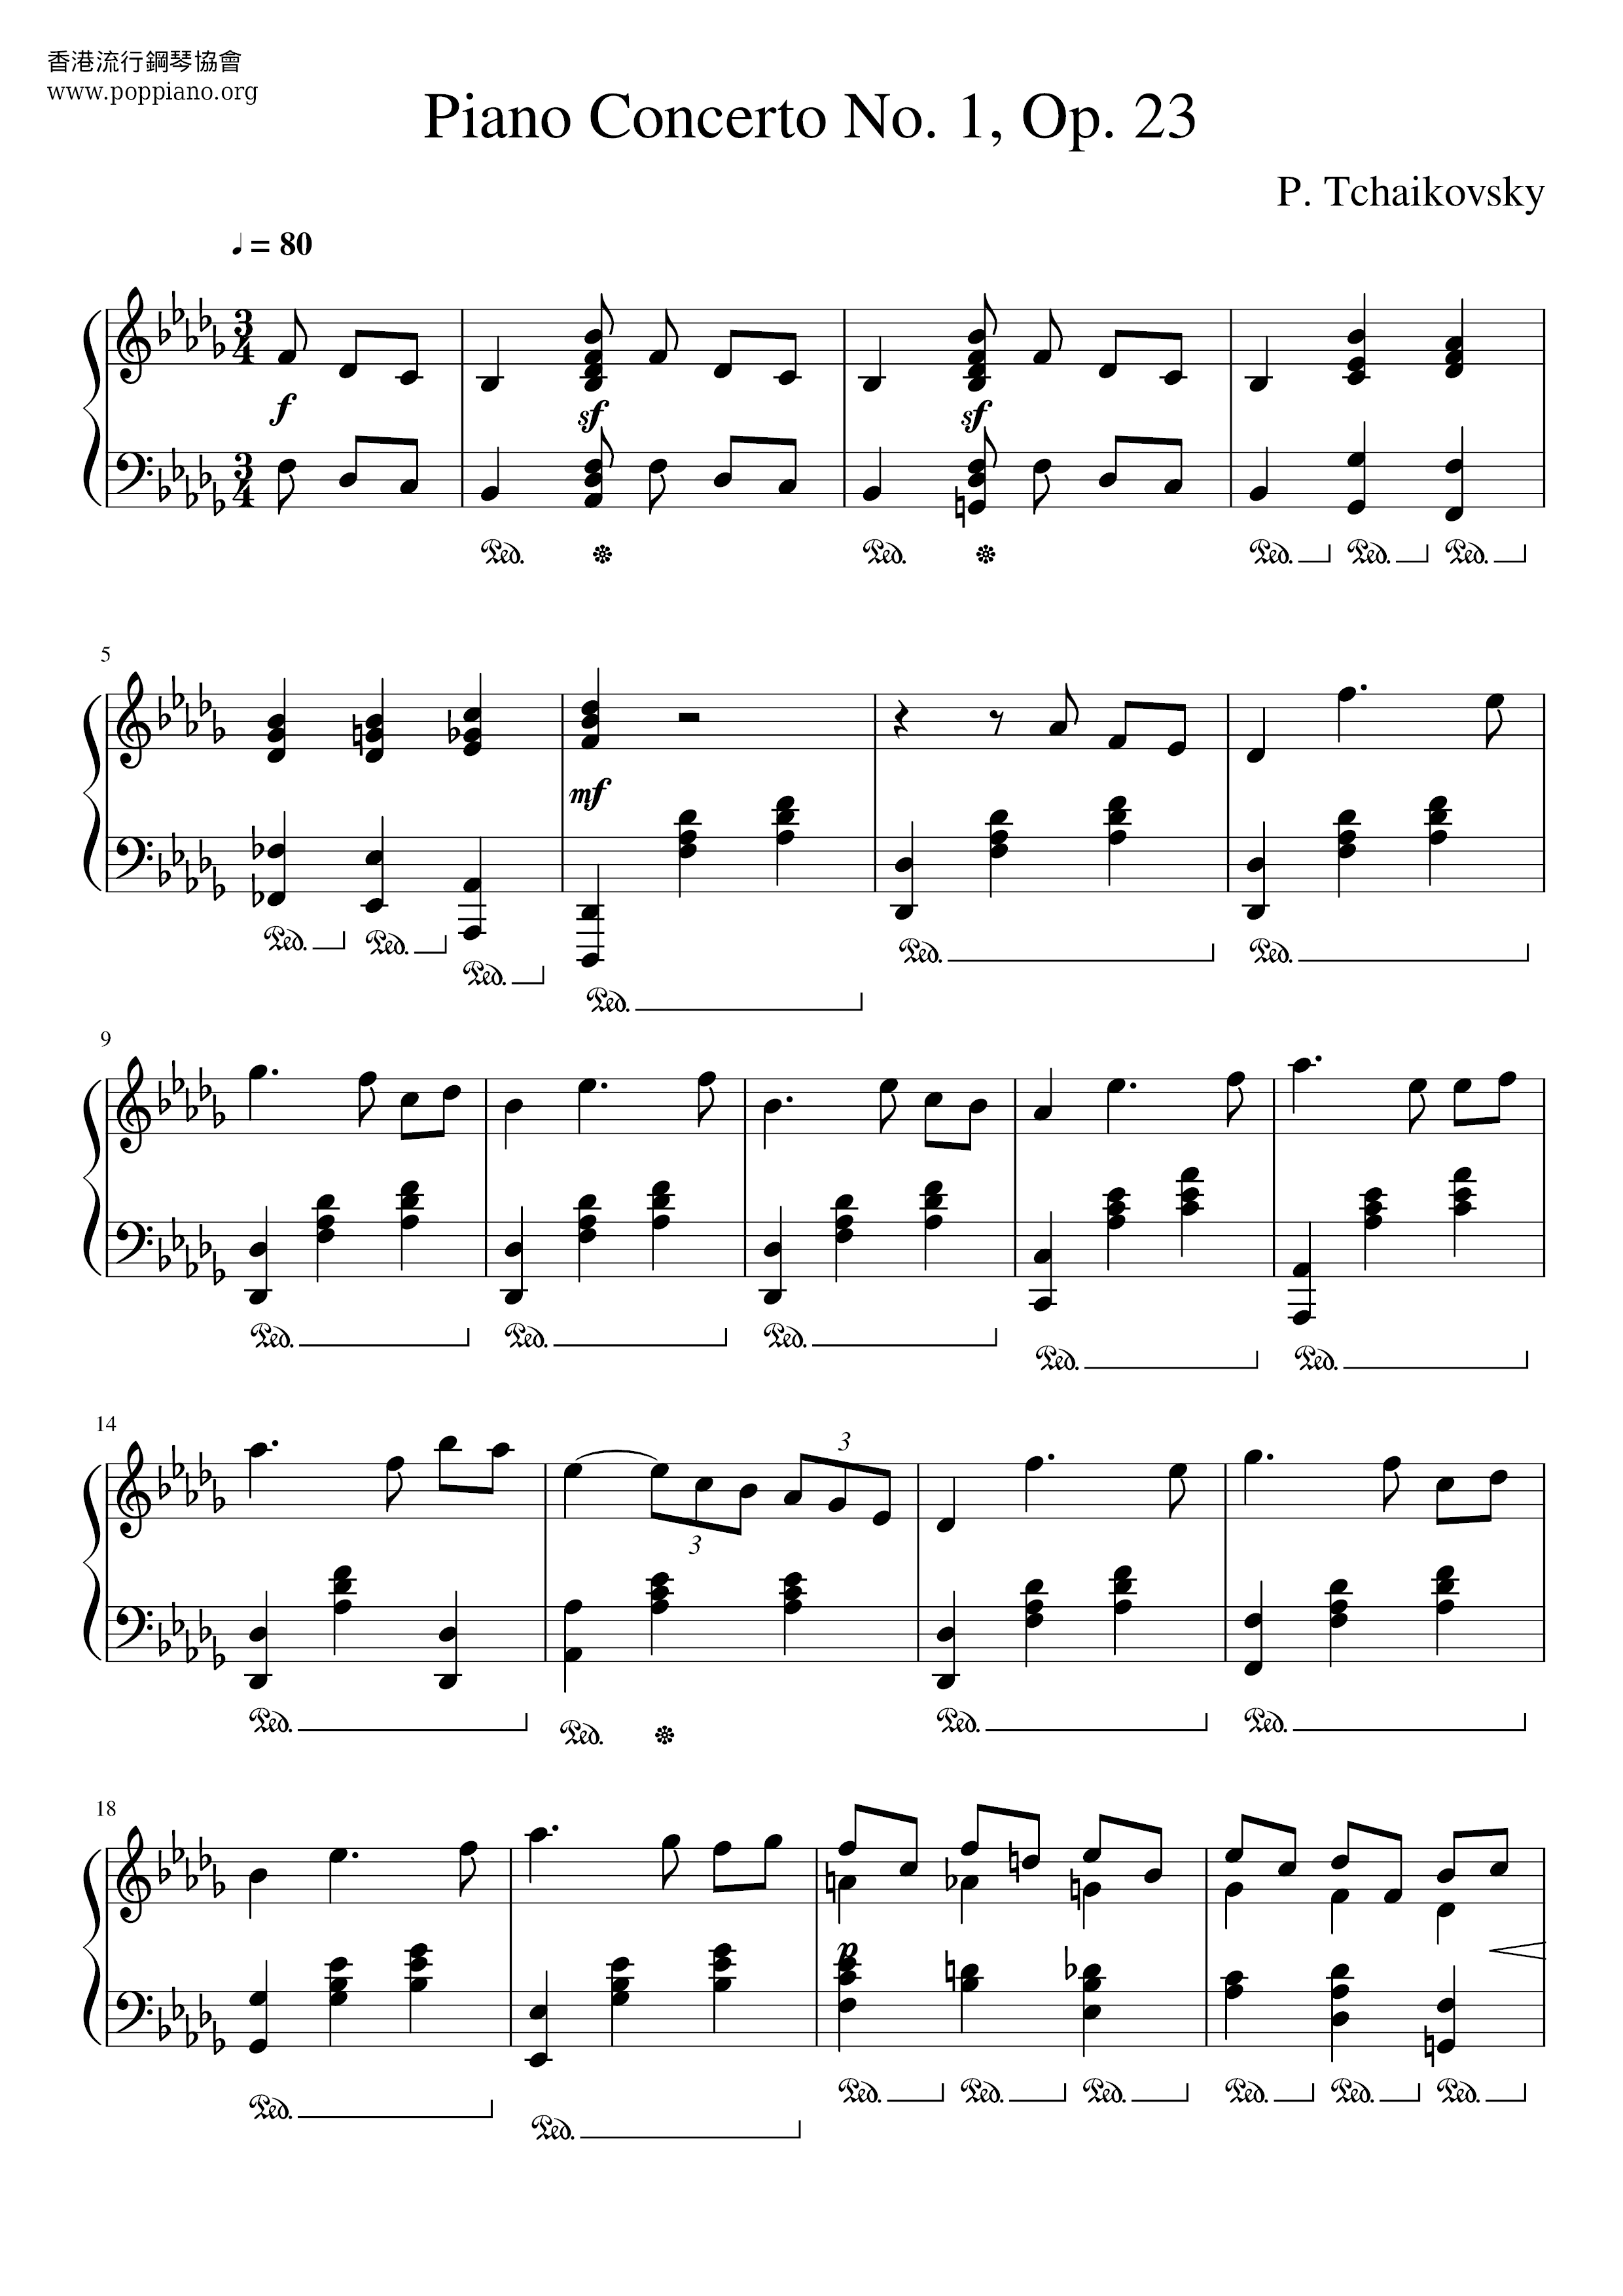 Piano Concerto No.1, Op.23 Score